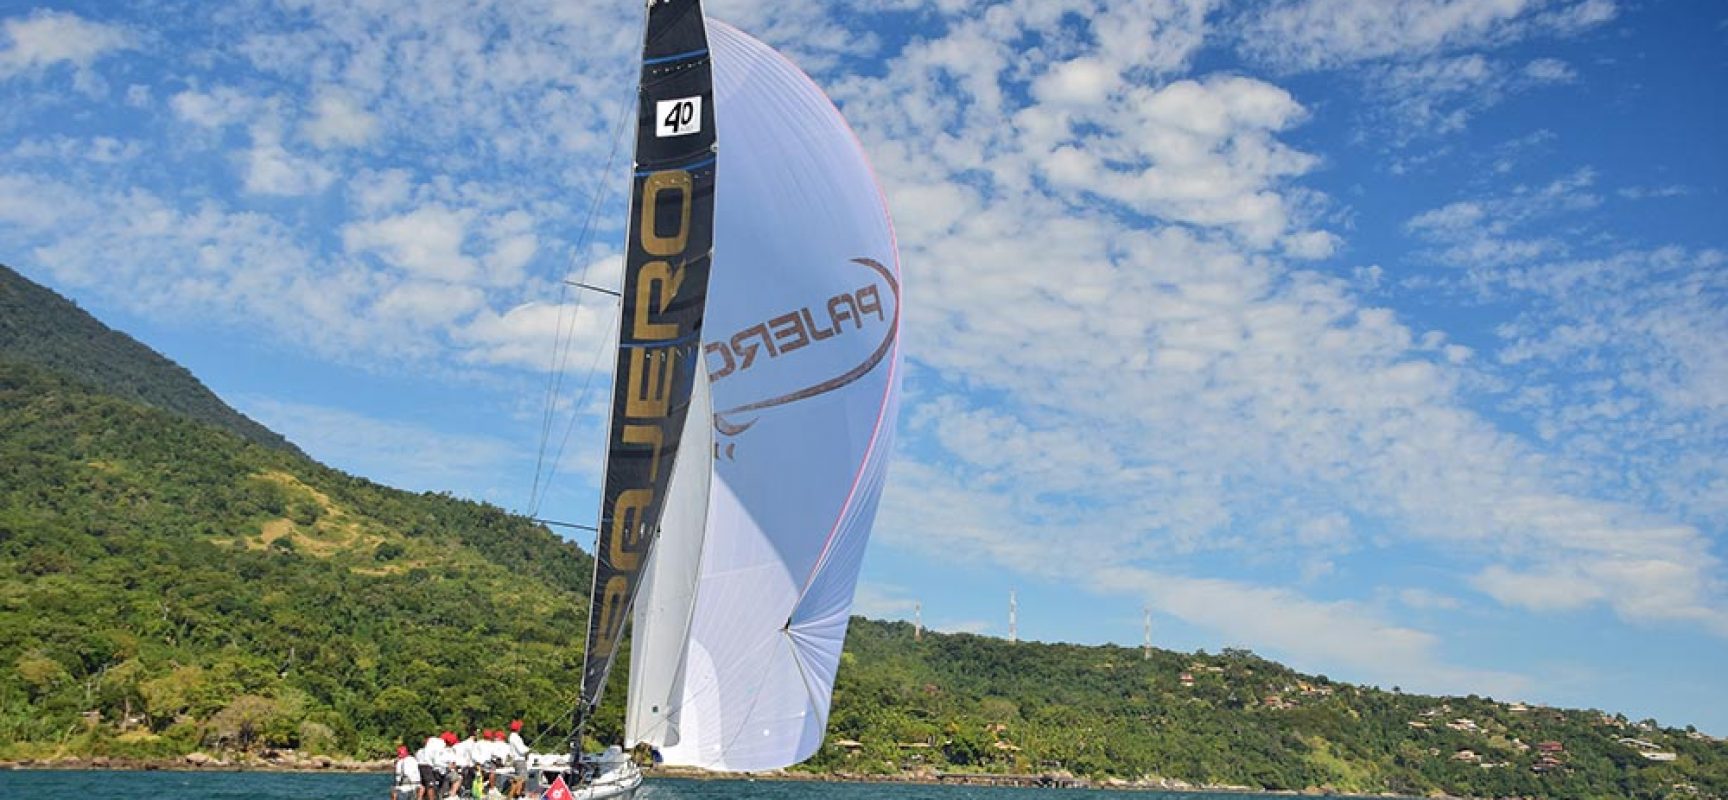 Barco Pajero confirma participação na Semana Internacional de Vela de Ilhabela